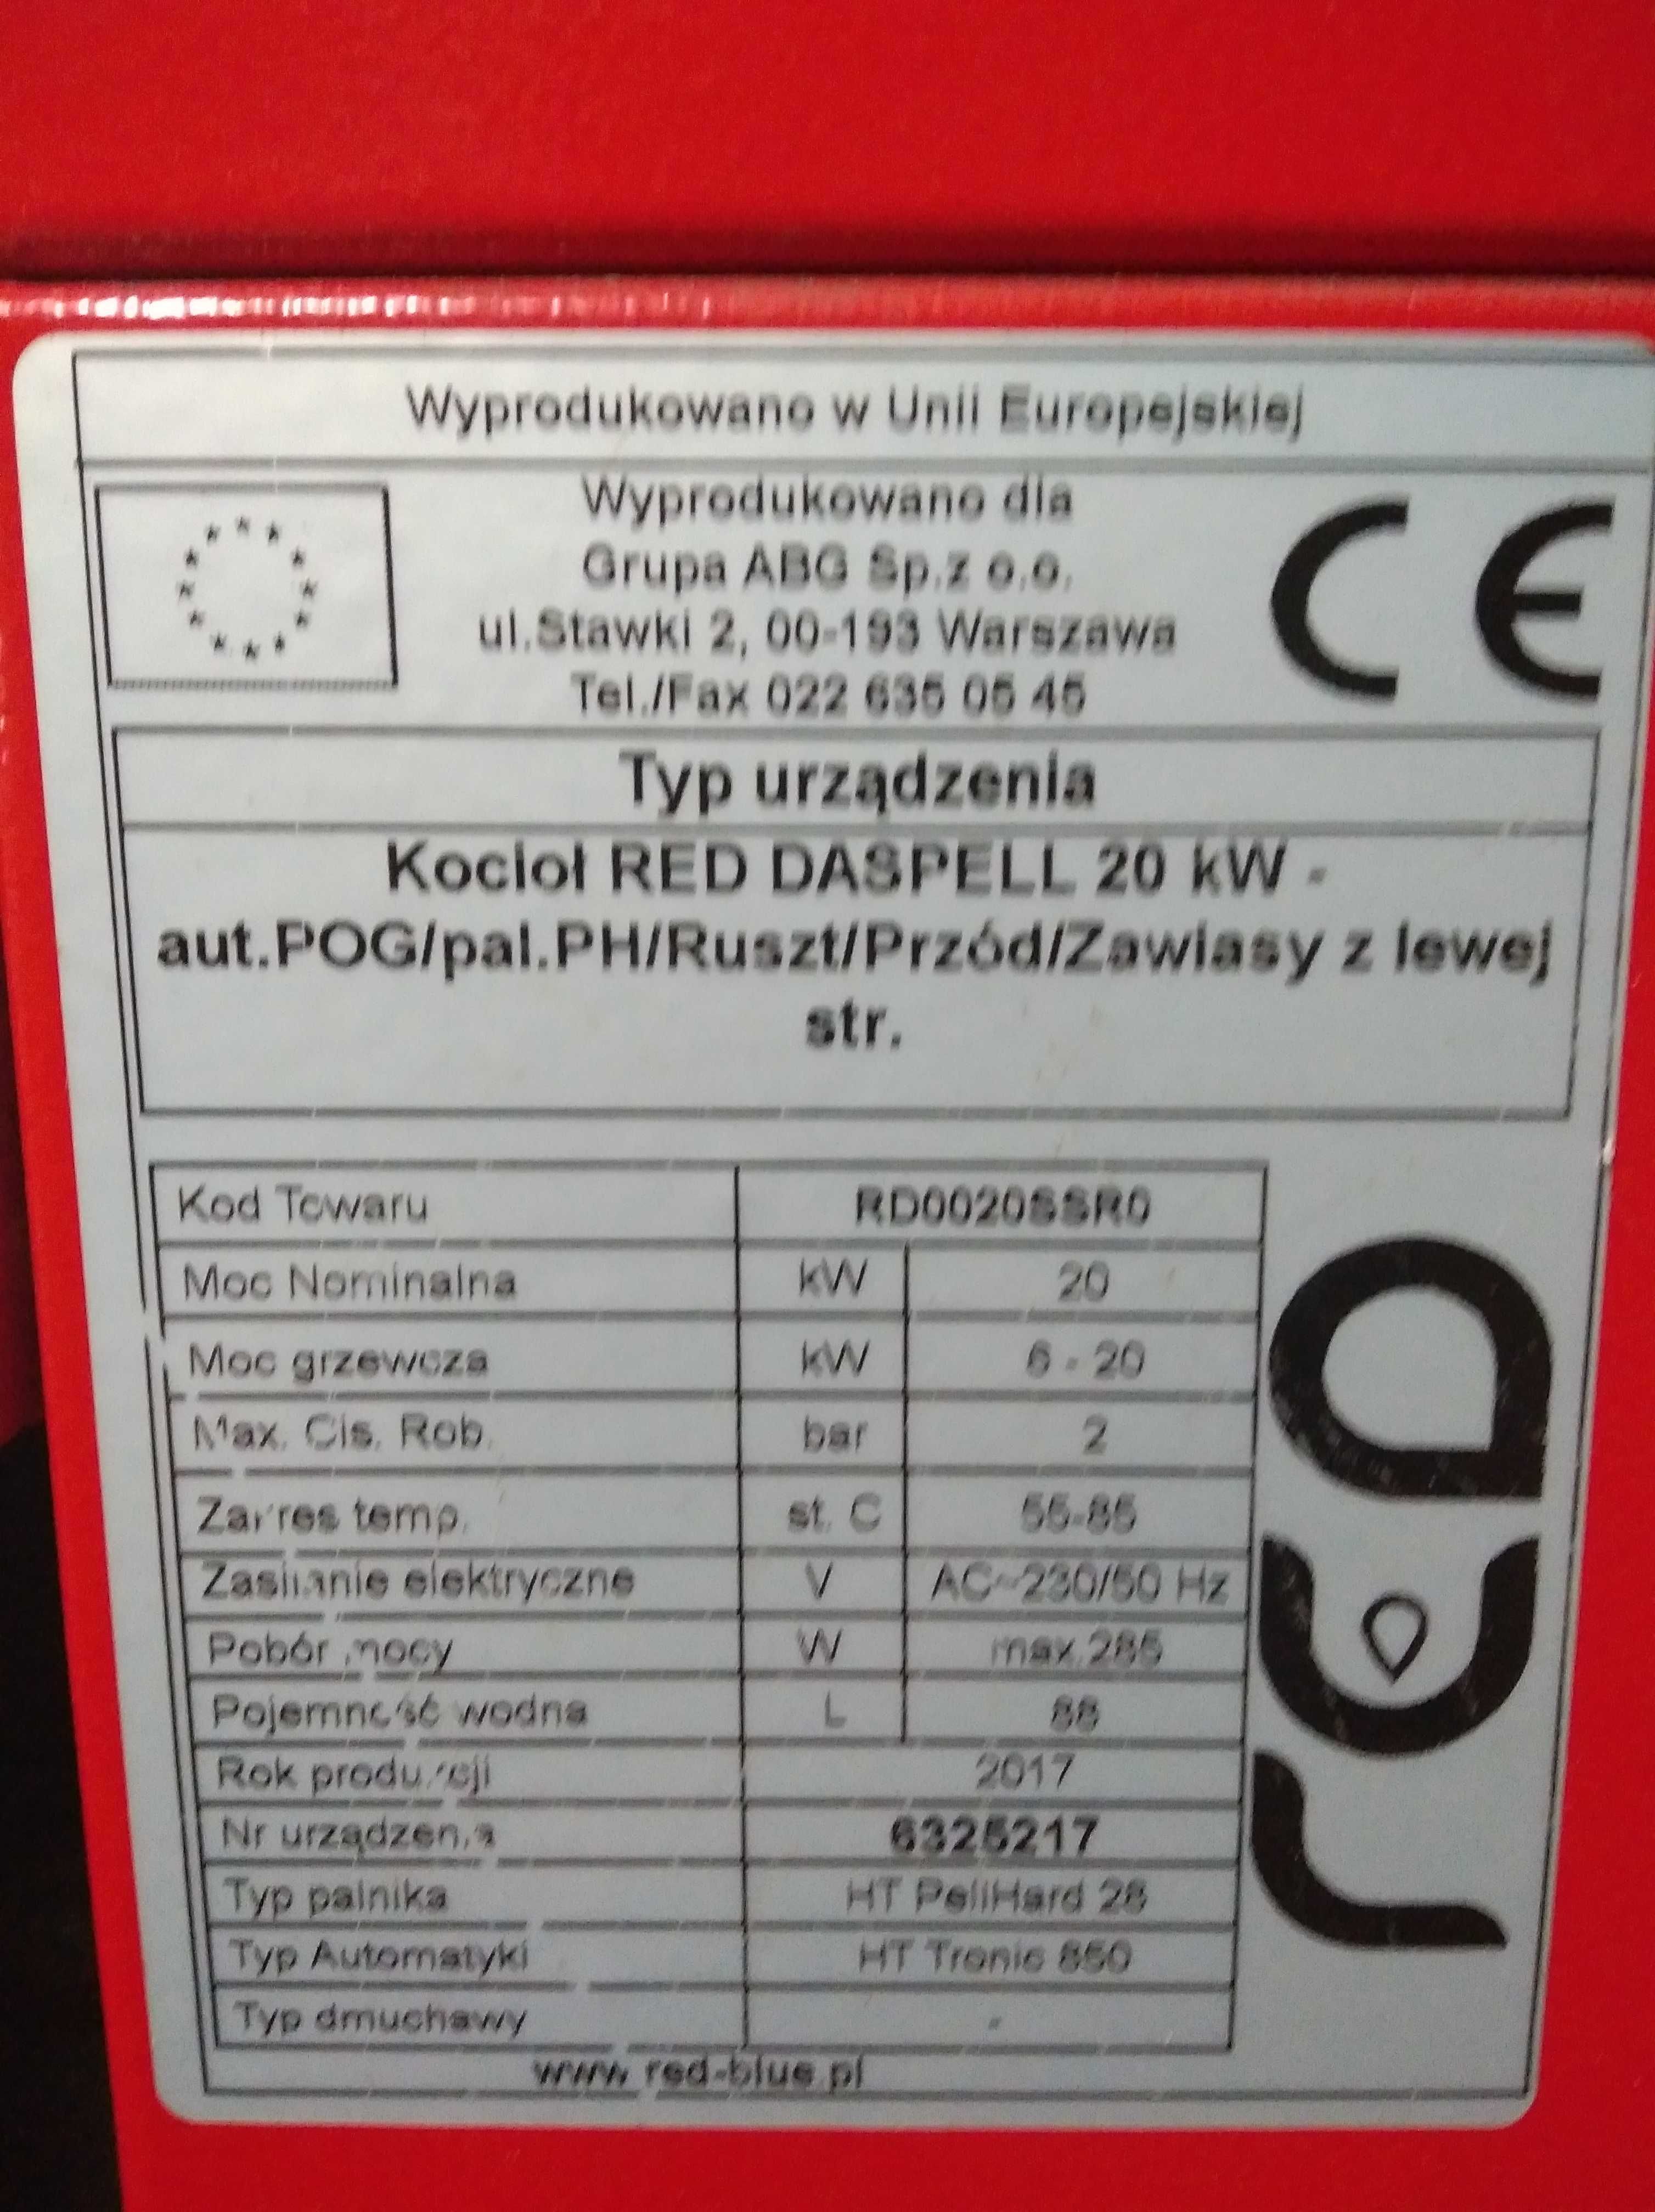 Kocioł RED DasPell Helztechnik o moc 20 KW